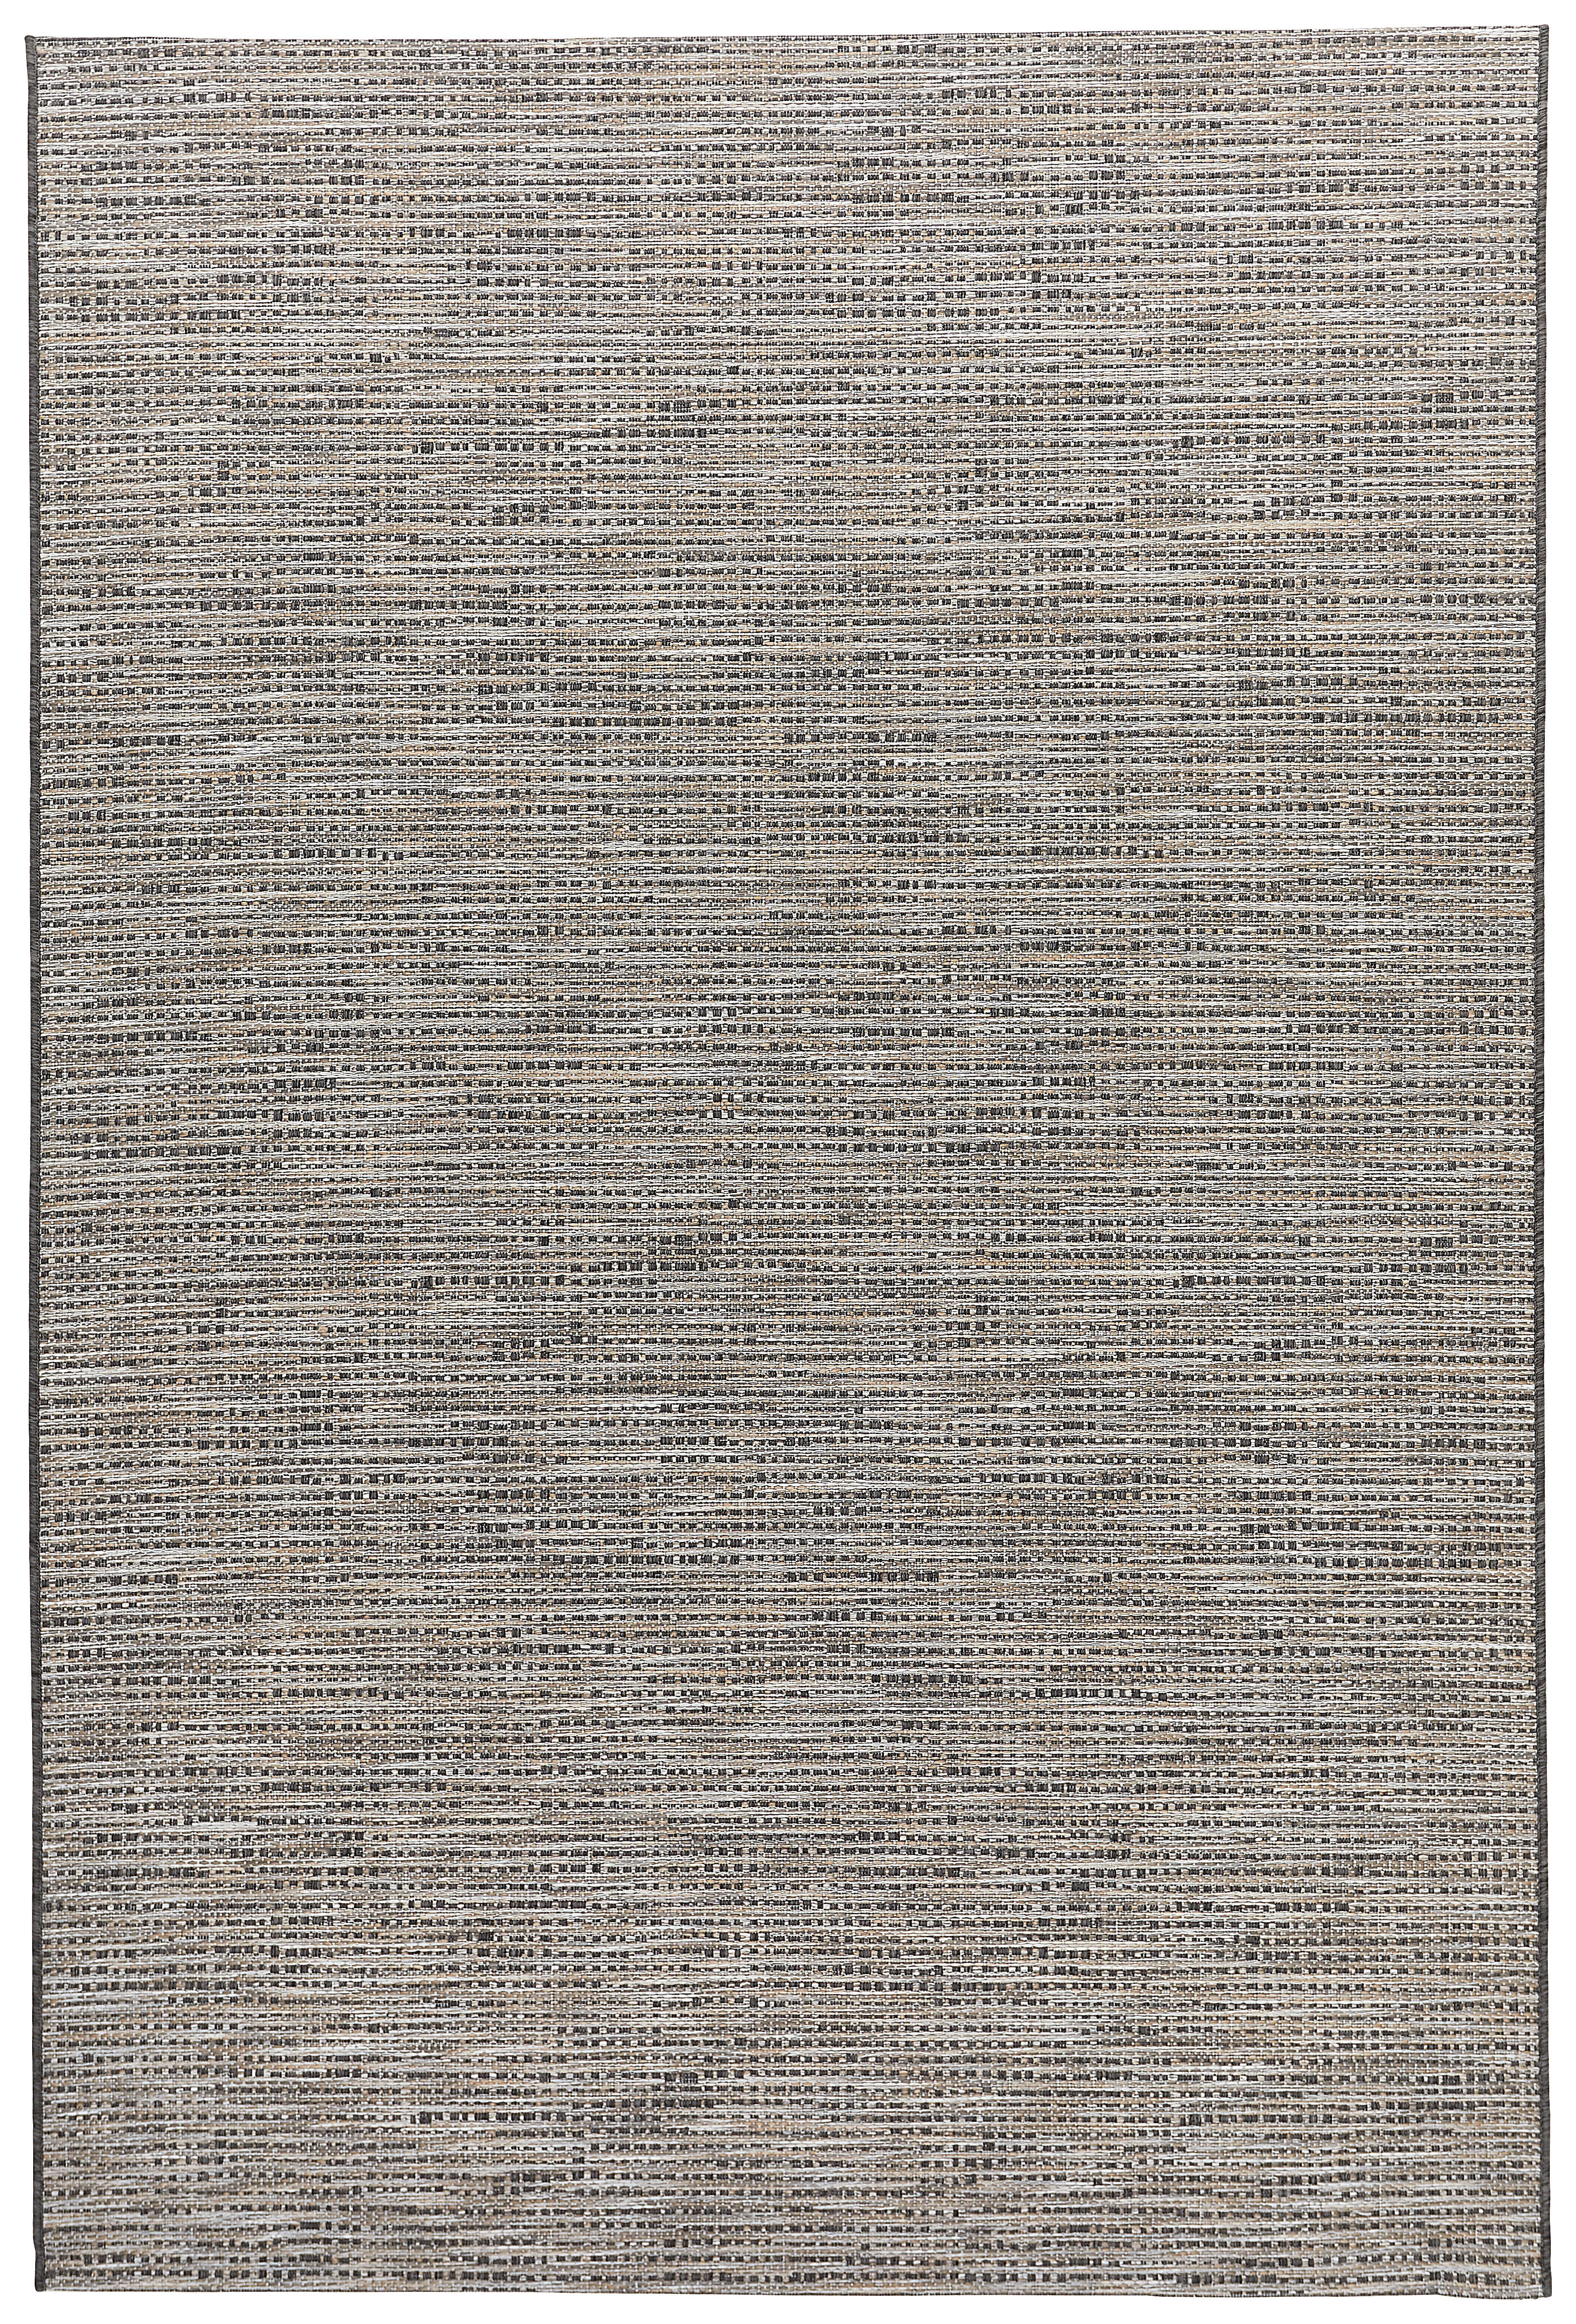 FLACHWEBETEPPICH  120/170 cm  Anthrazit   - Anthrazit, Design, Textil (120/170cm) - Novel